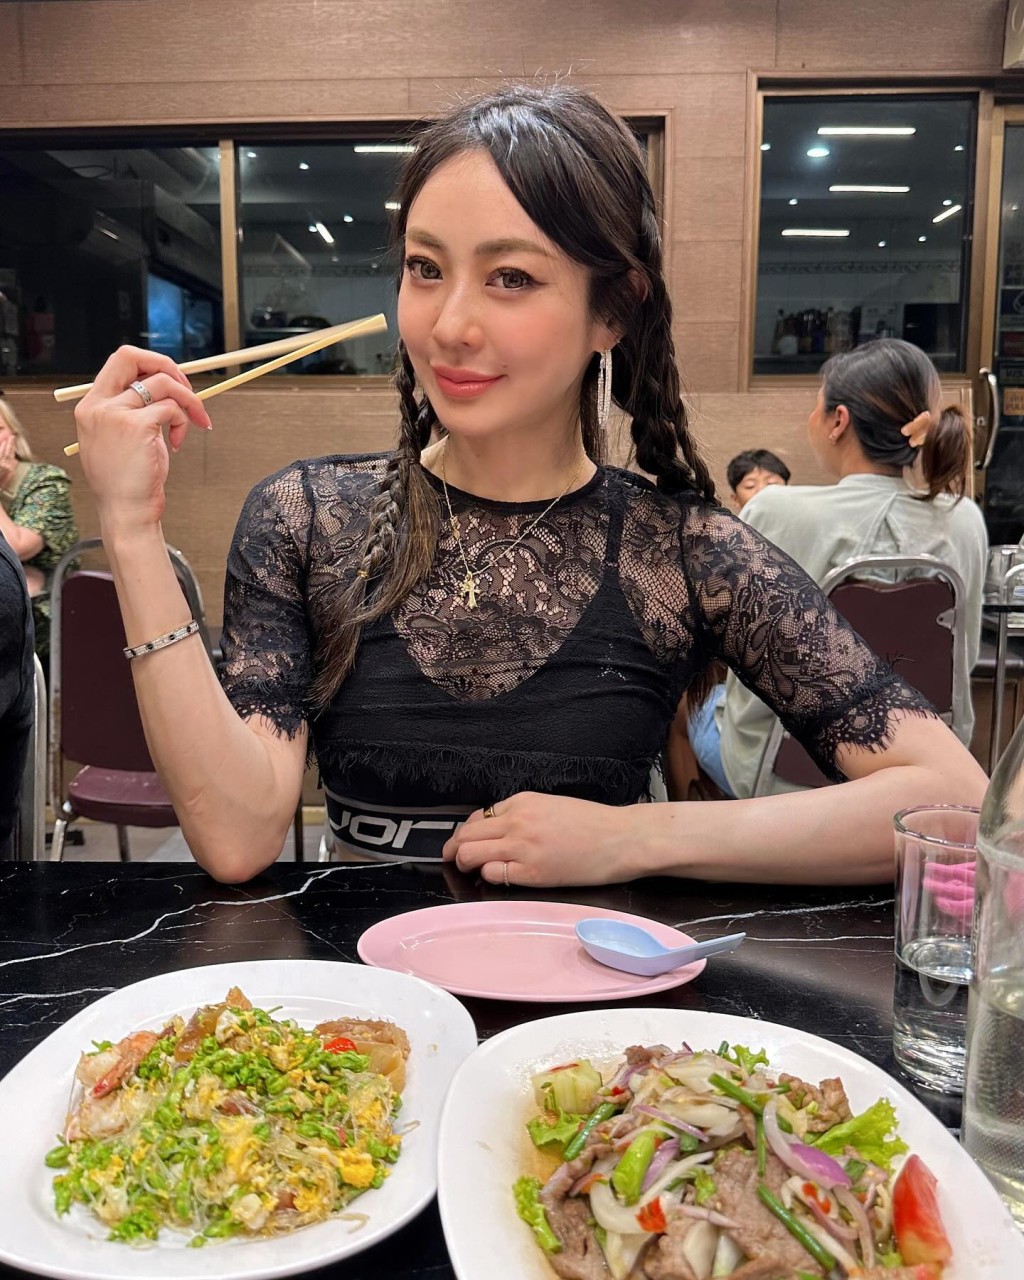 松冈李那喜欢吃泰国的美食。